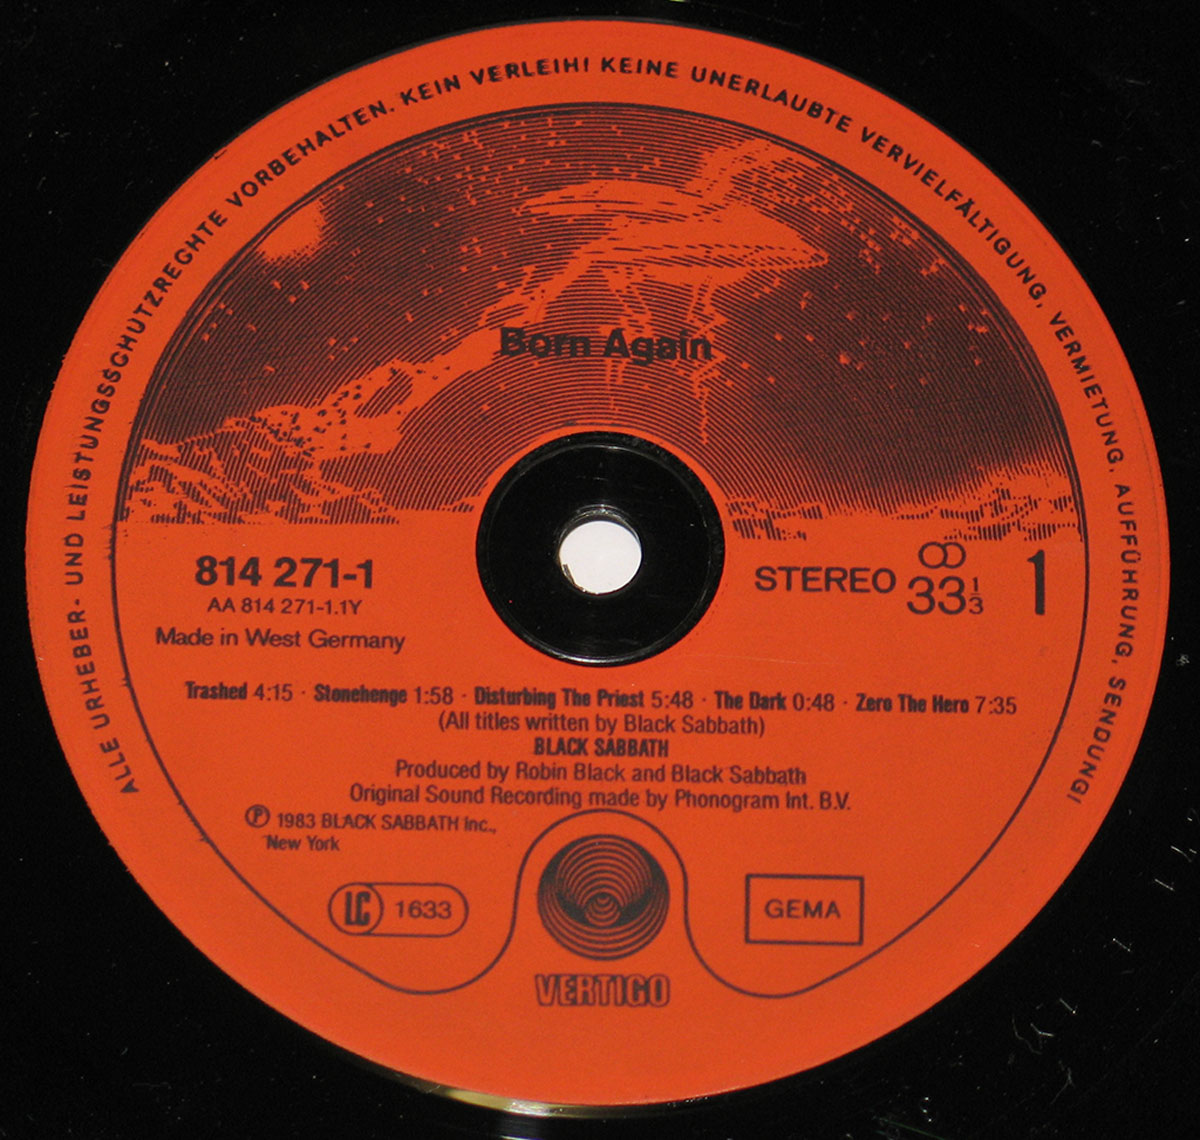 Close-up of the Red Vertigo Record Label with catalognr 814 271-1  